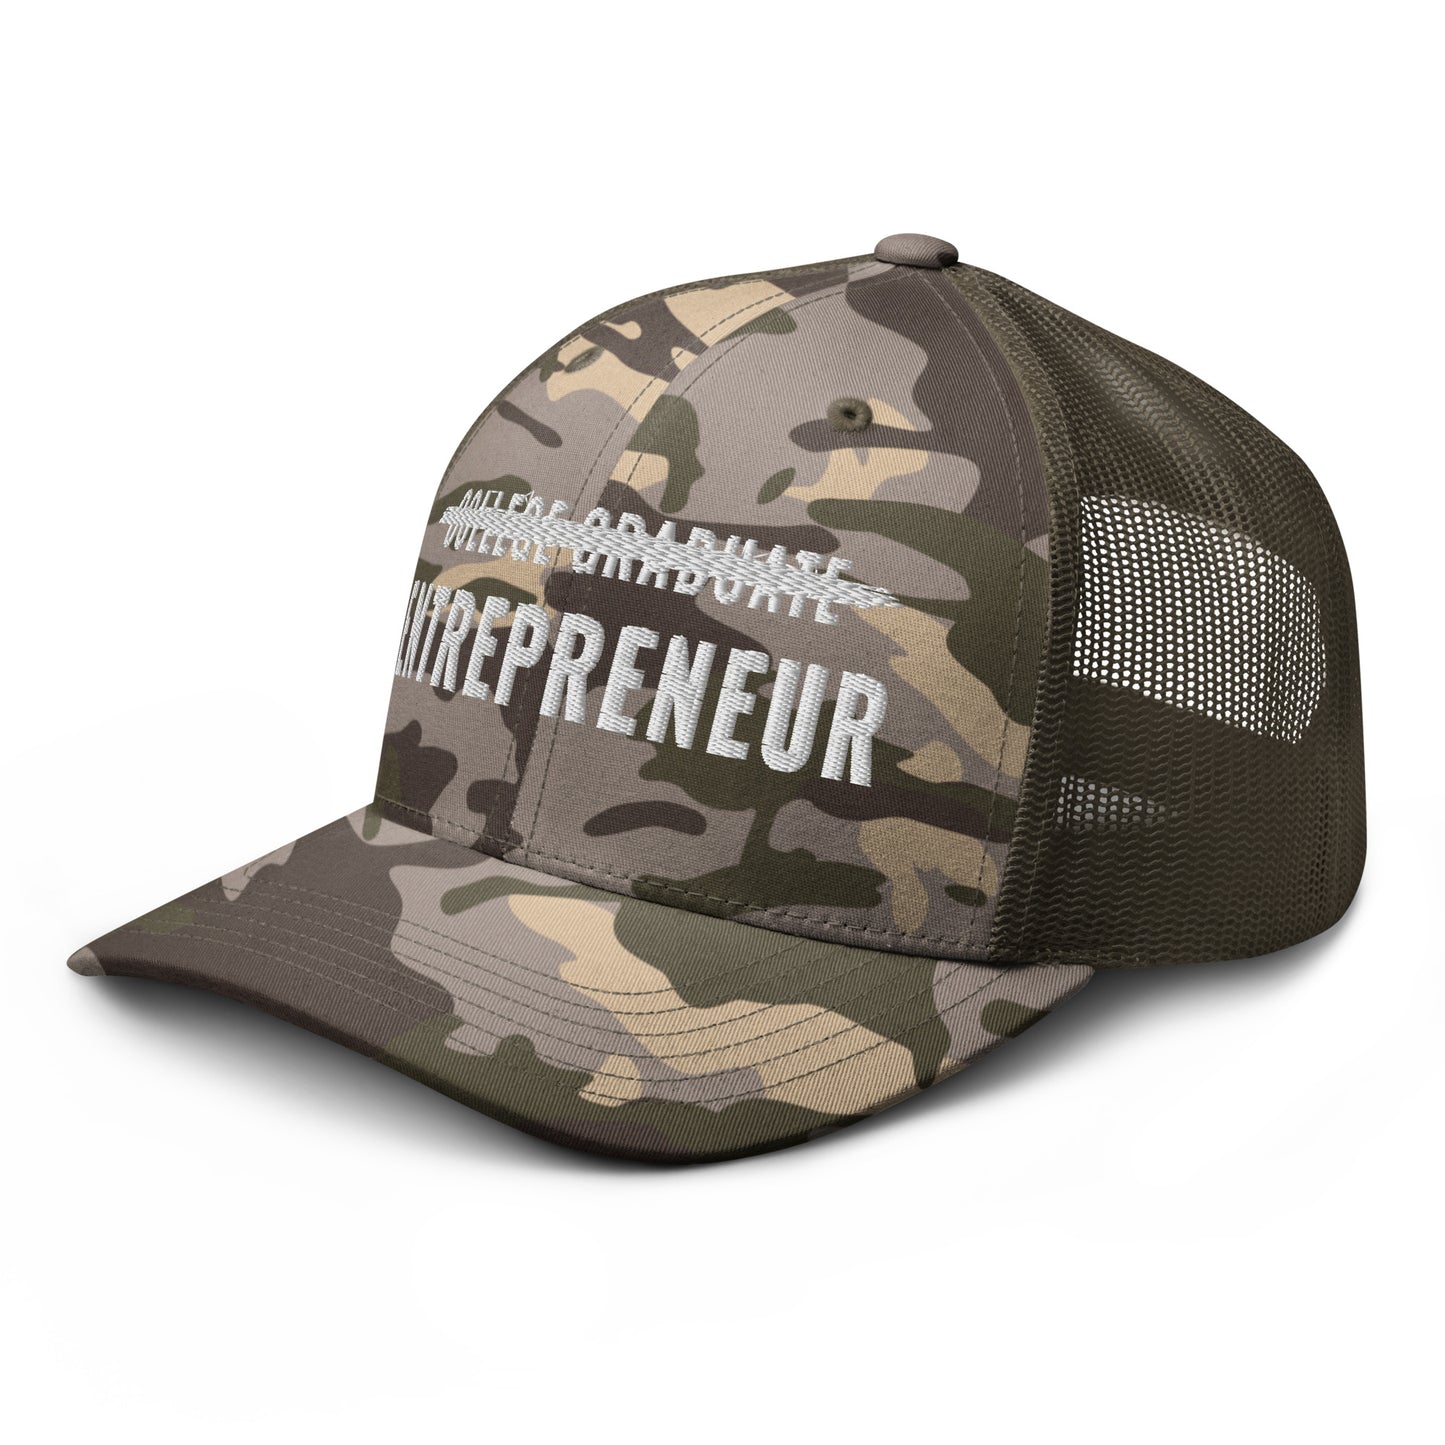 College Graduate < Entrepreneur Hat